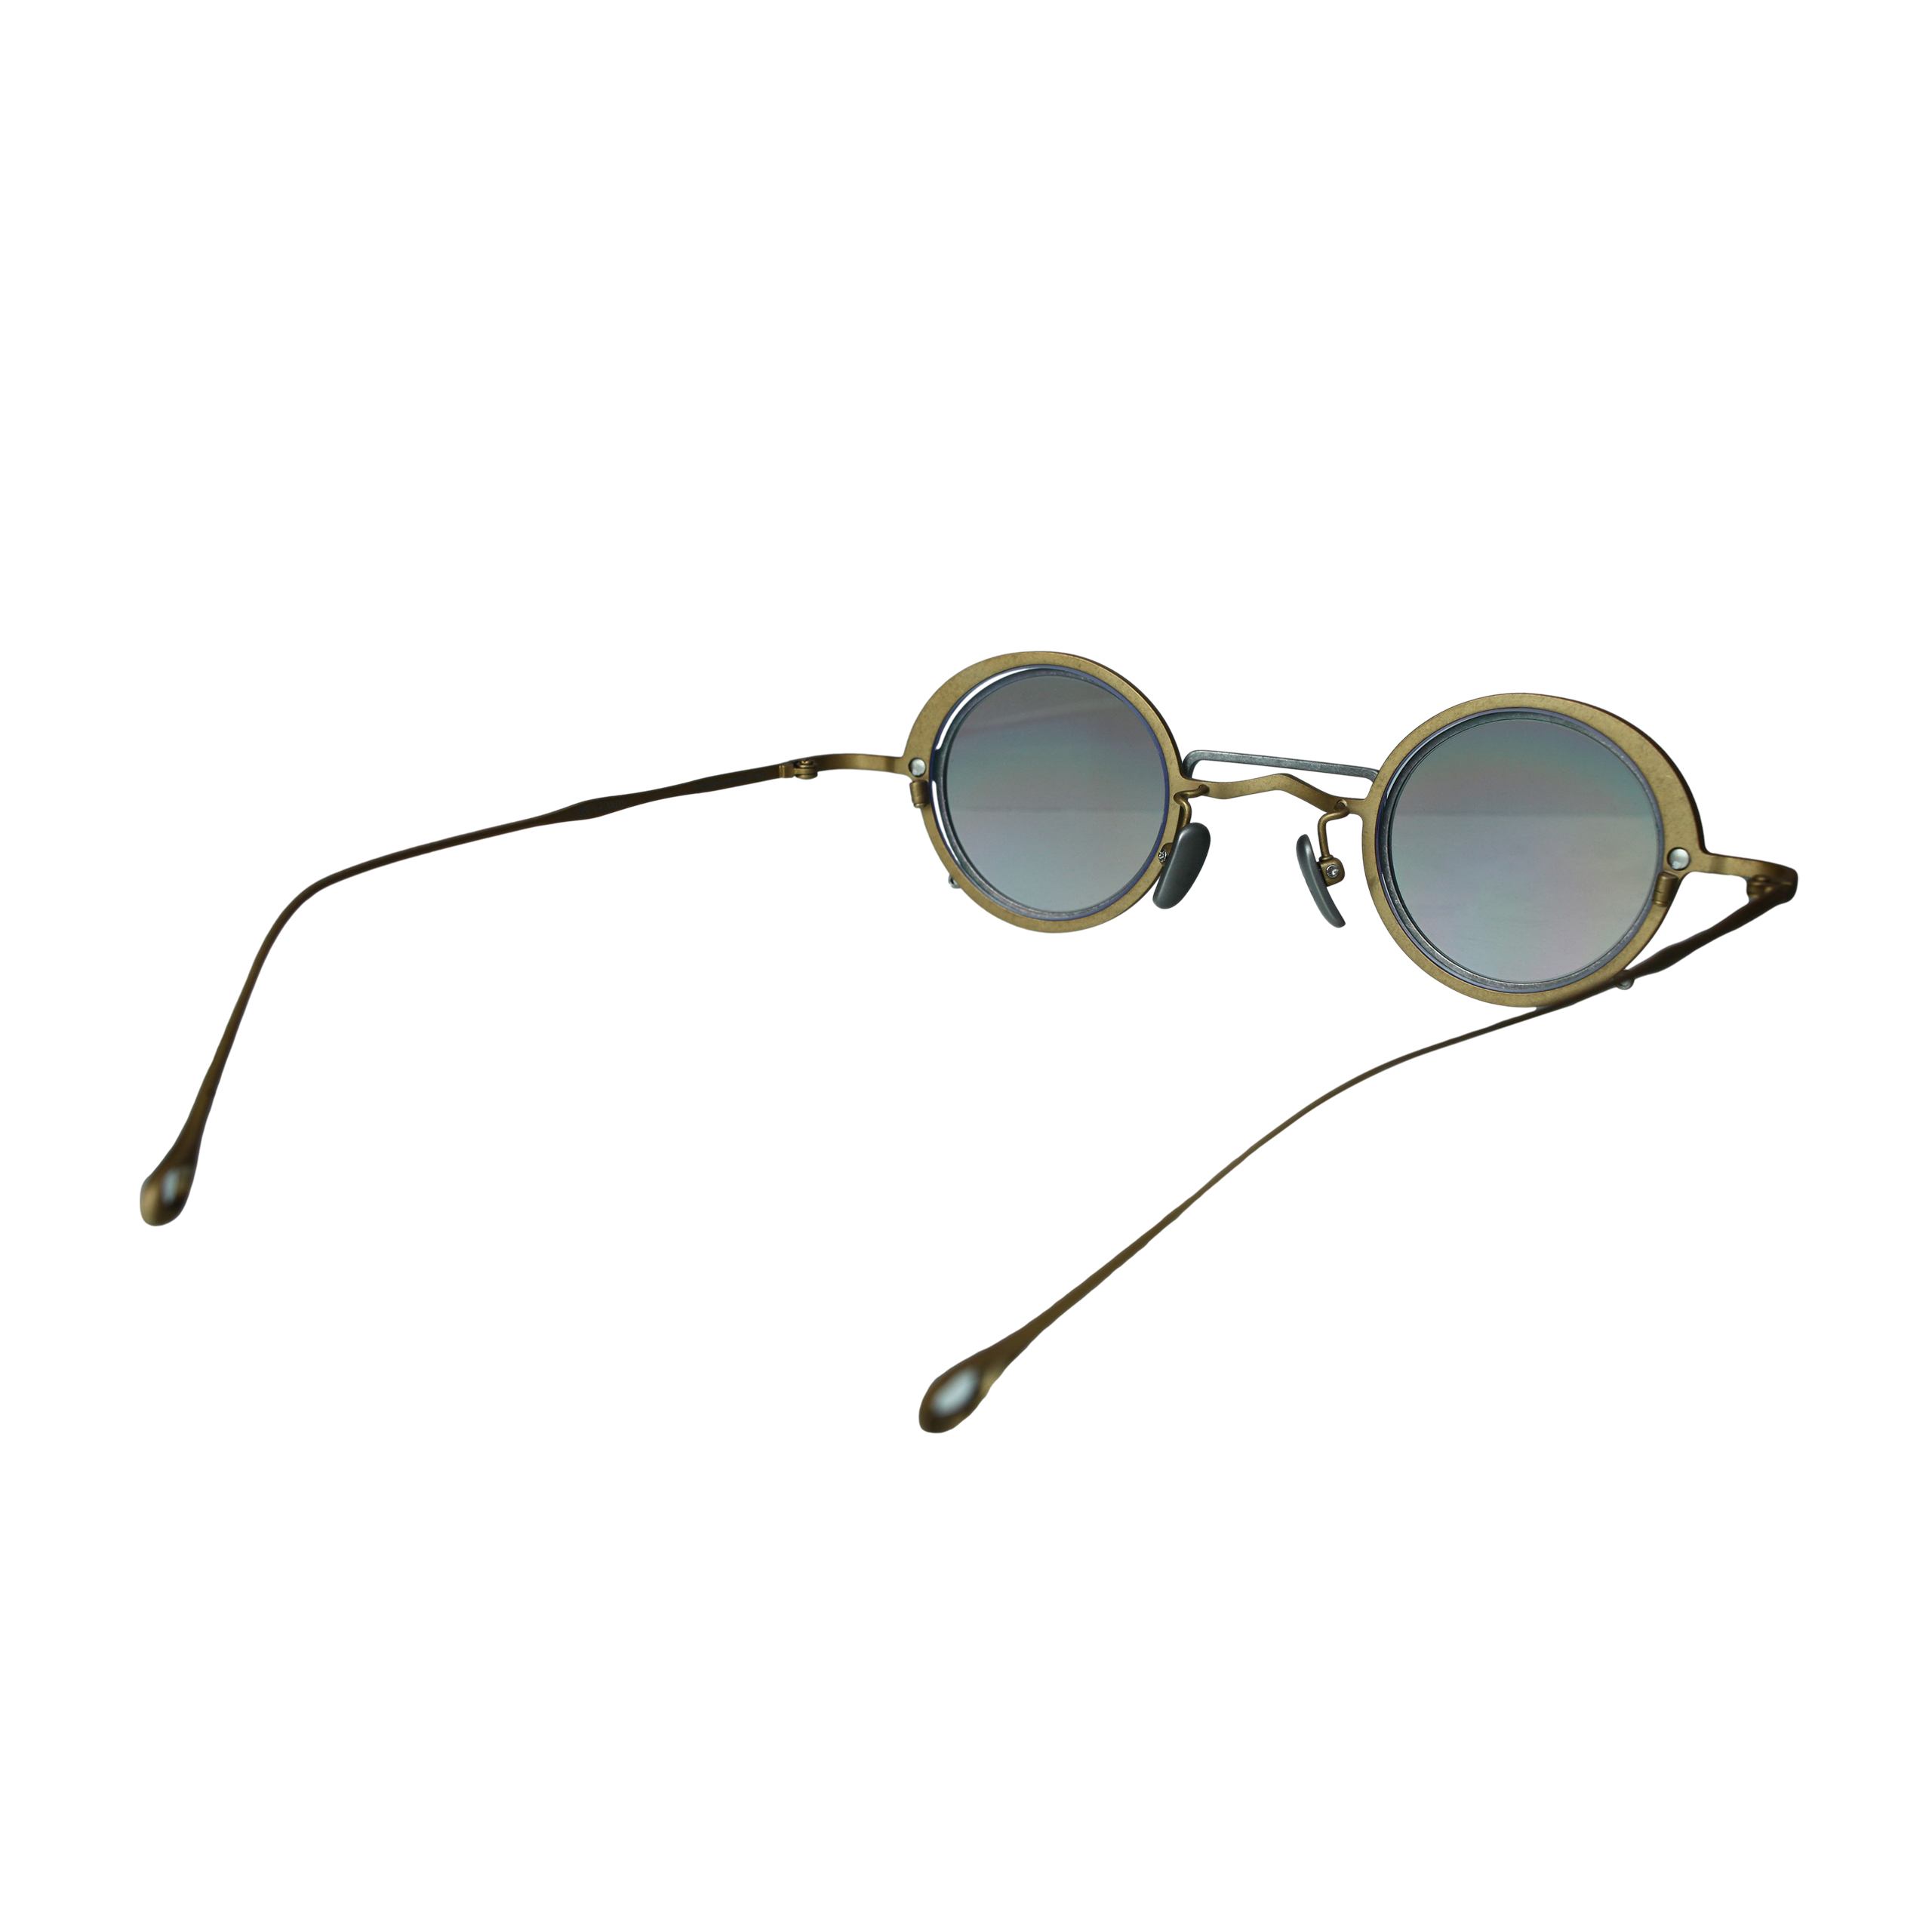 Солнцезащитные очки с дополнительной линзой Ziggy Chen 0M2336001/05, размер One Size 0M2336001/05 - фото 5